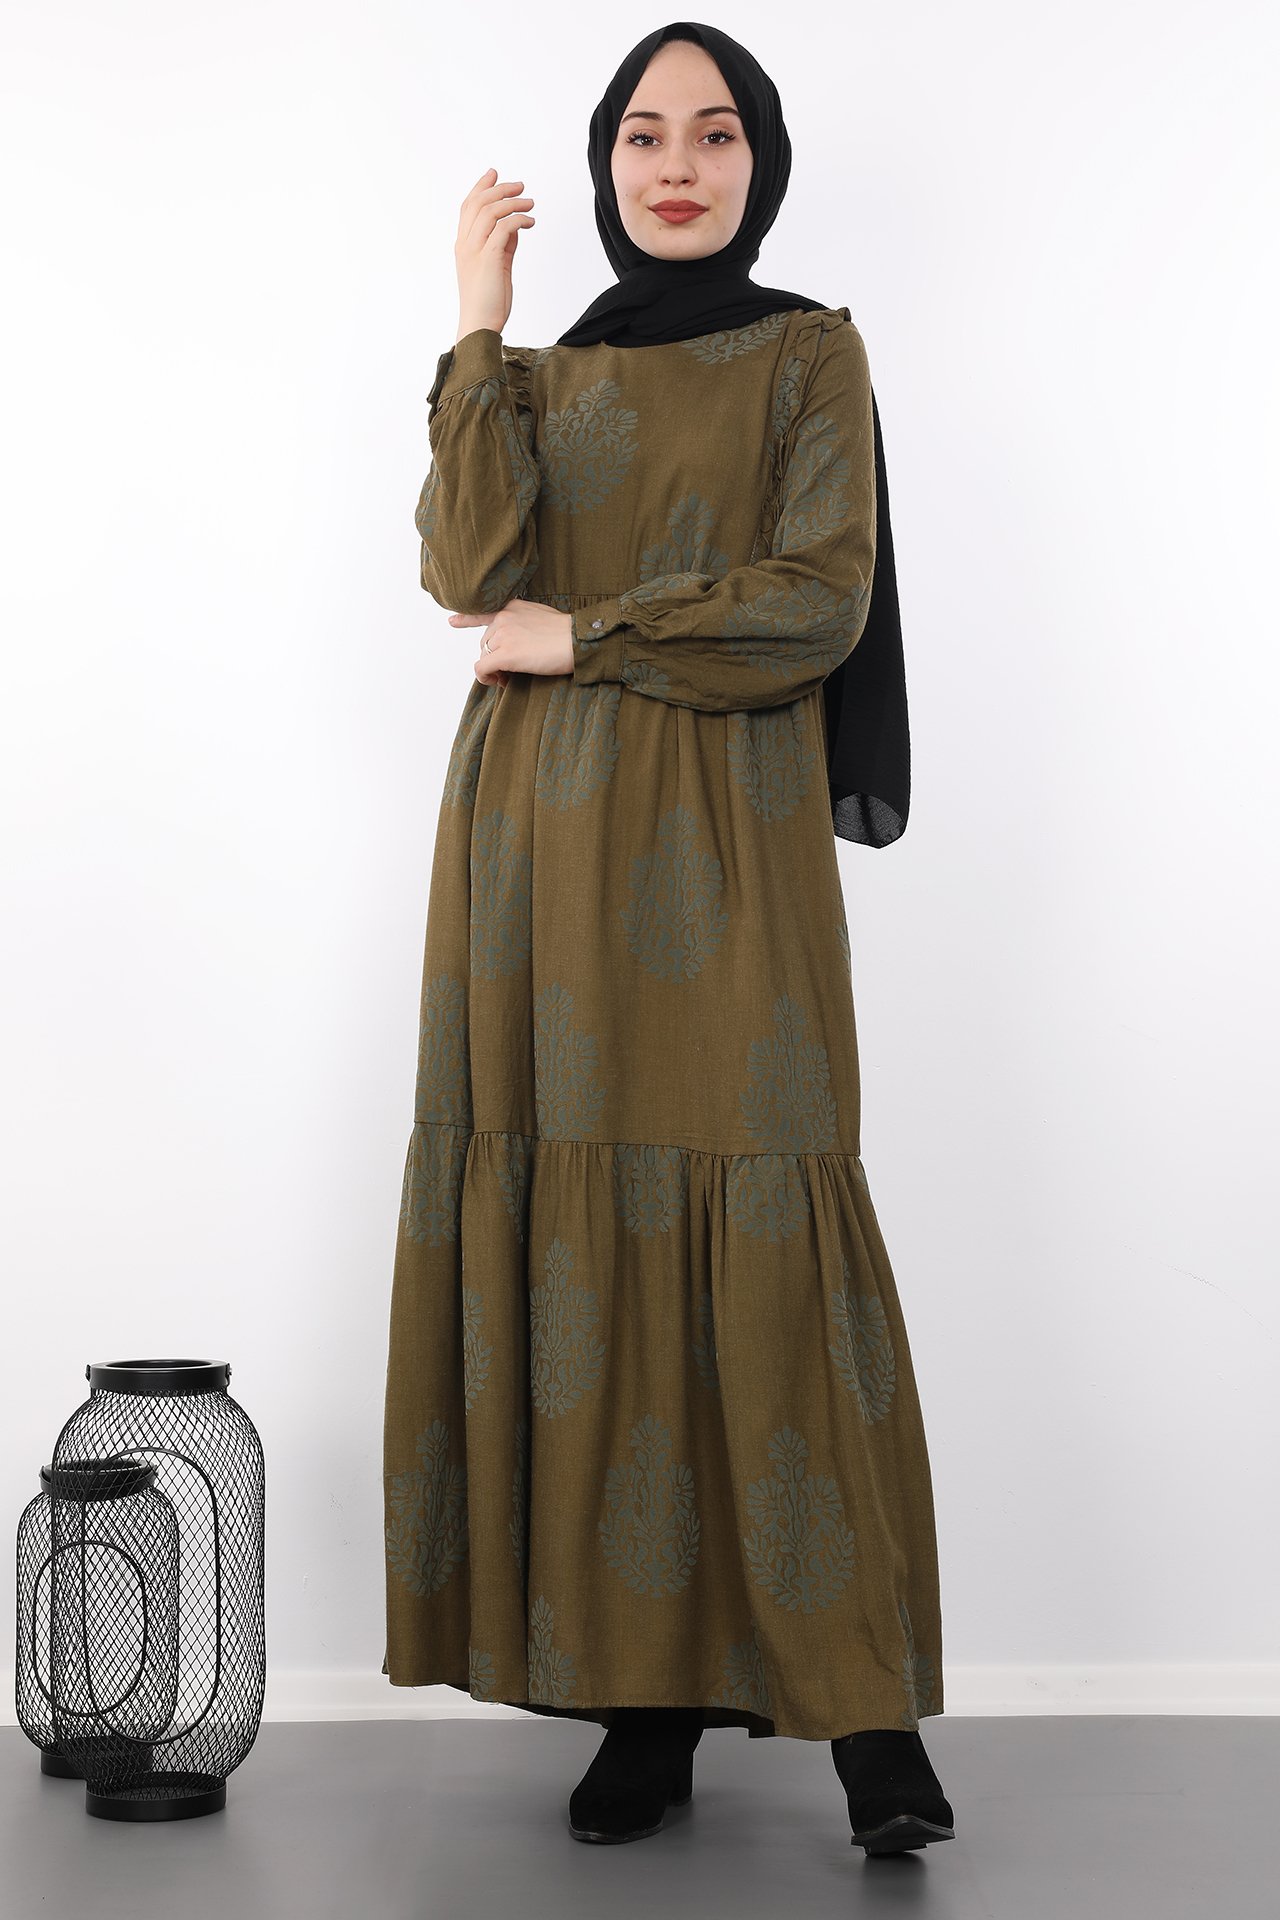 GİZAGİYİM - Fırfırlı Retro Desen Elbise Kına yeşil